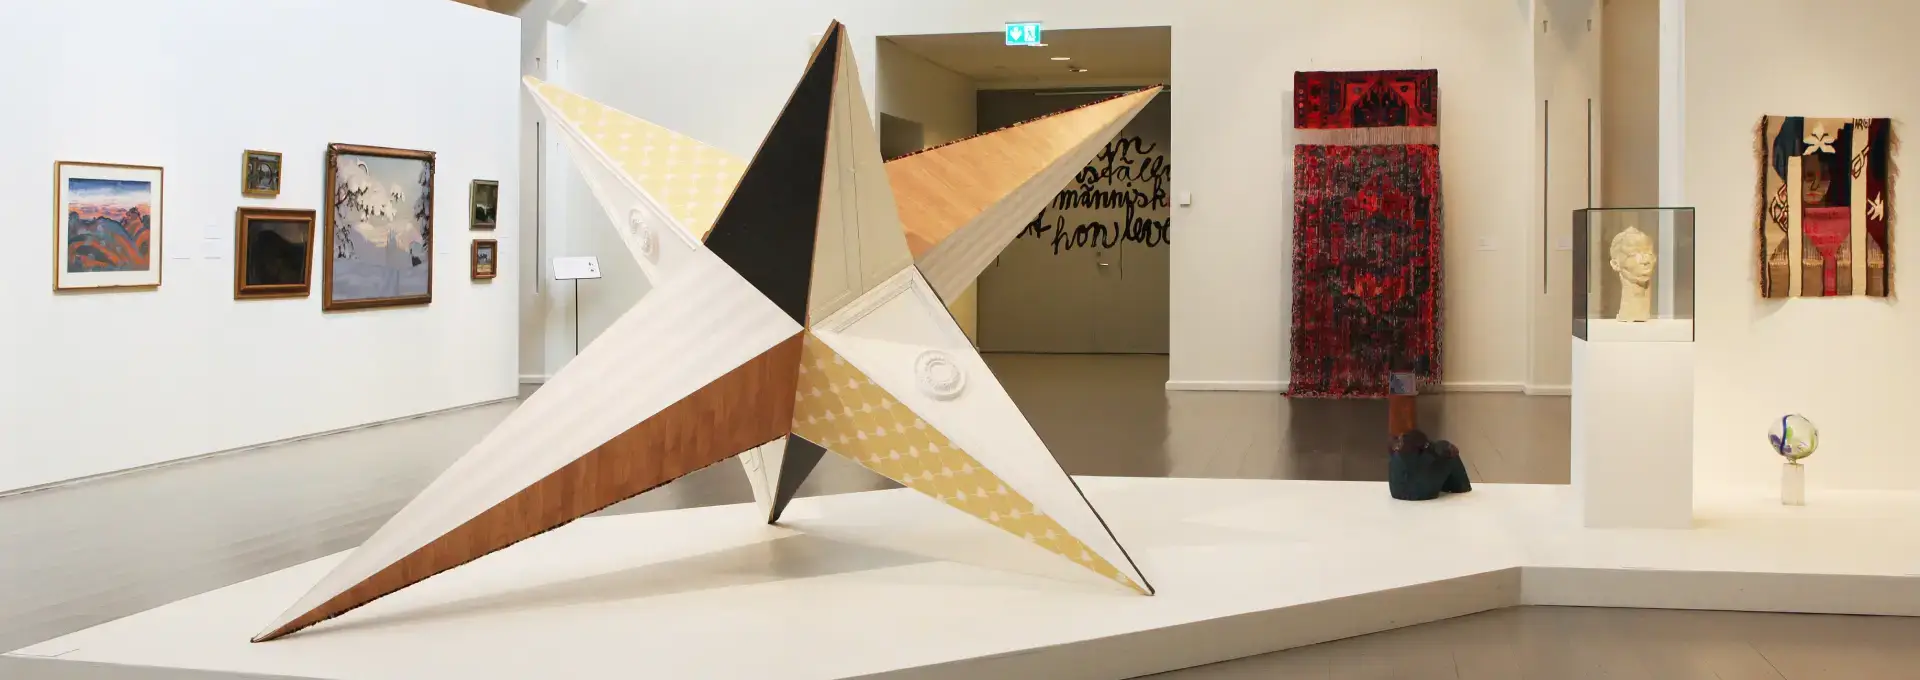 Flera konstverk i en utställningshall med en tredimensionell stor stjärna i mitten.